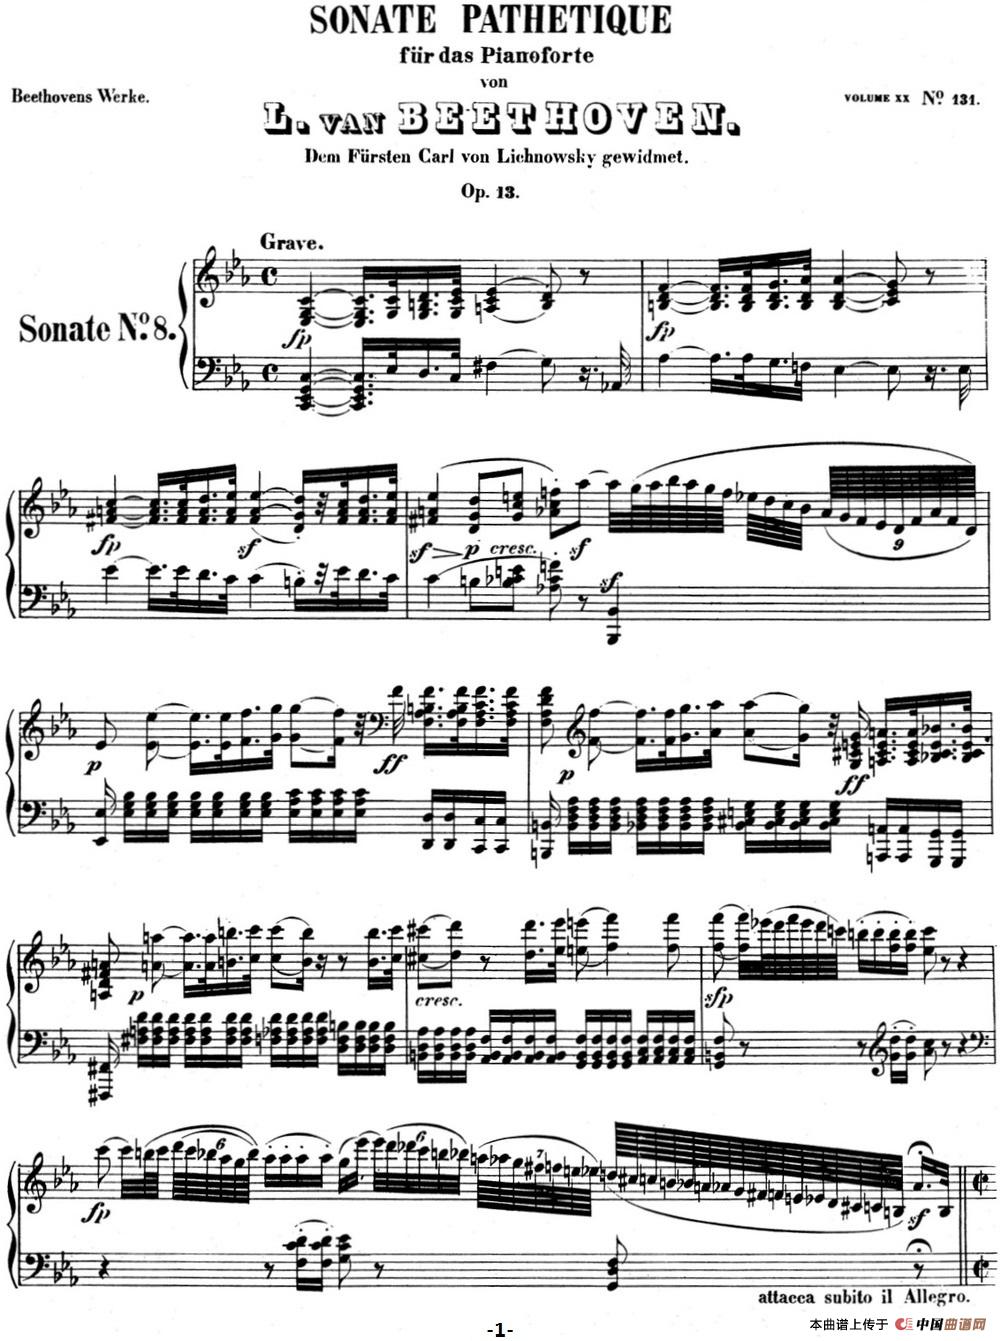 贝多芬钢琴奏鸣曲08 悲怆 c小调 op.13 c minor